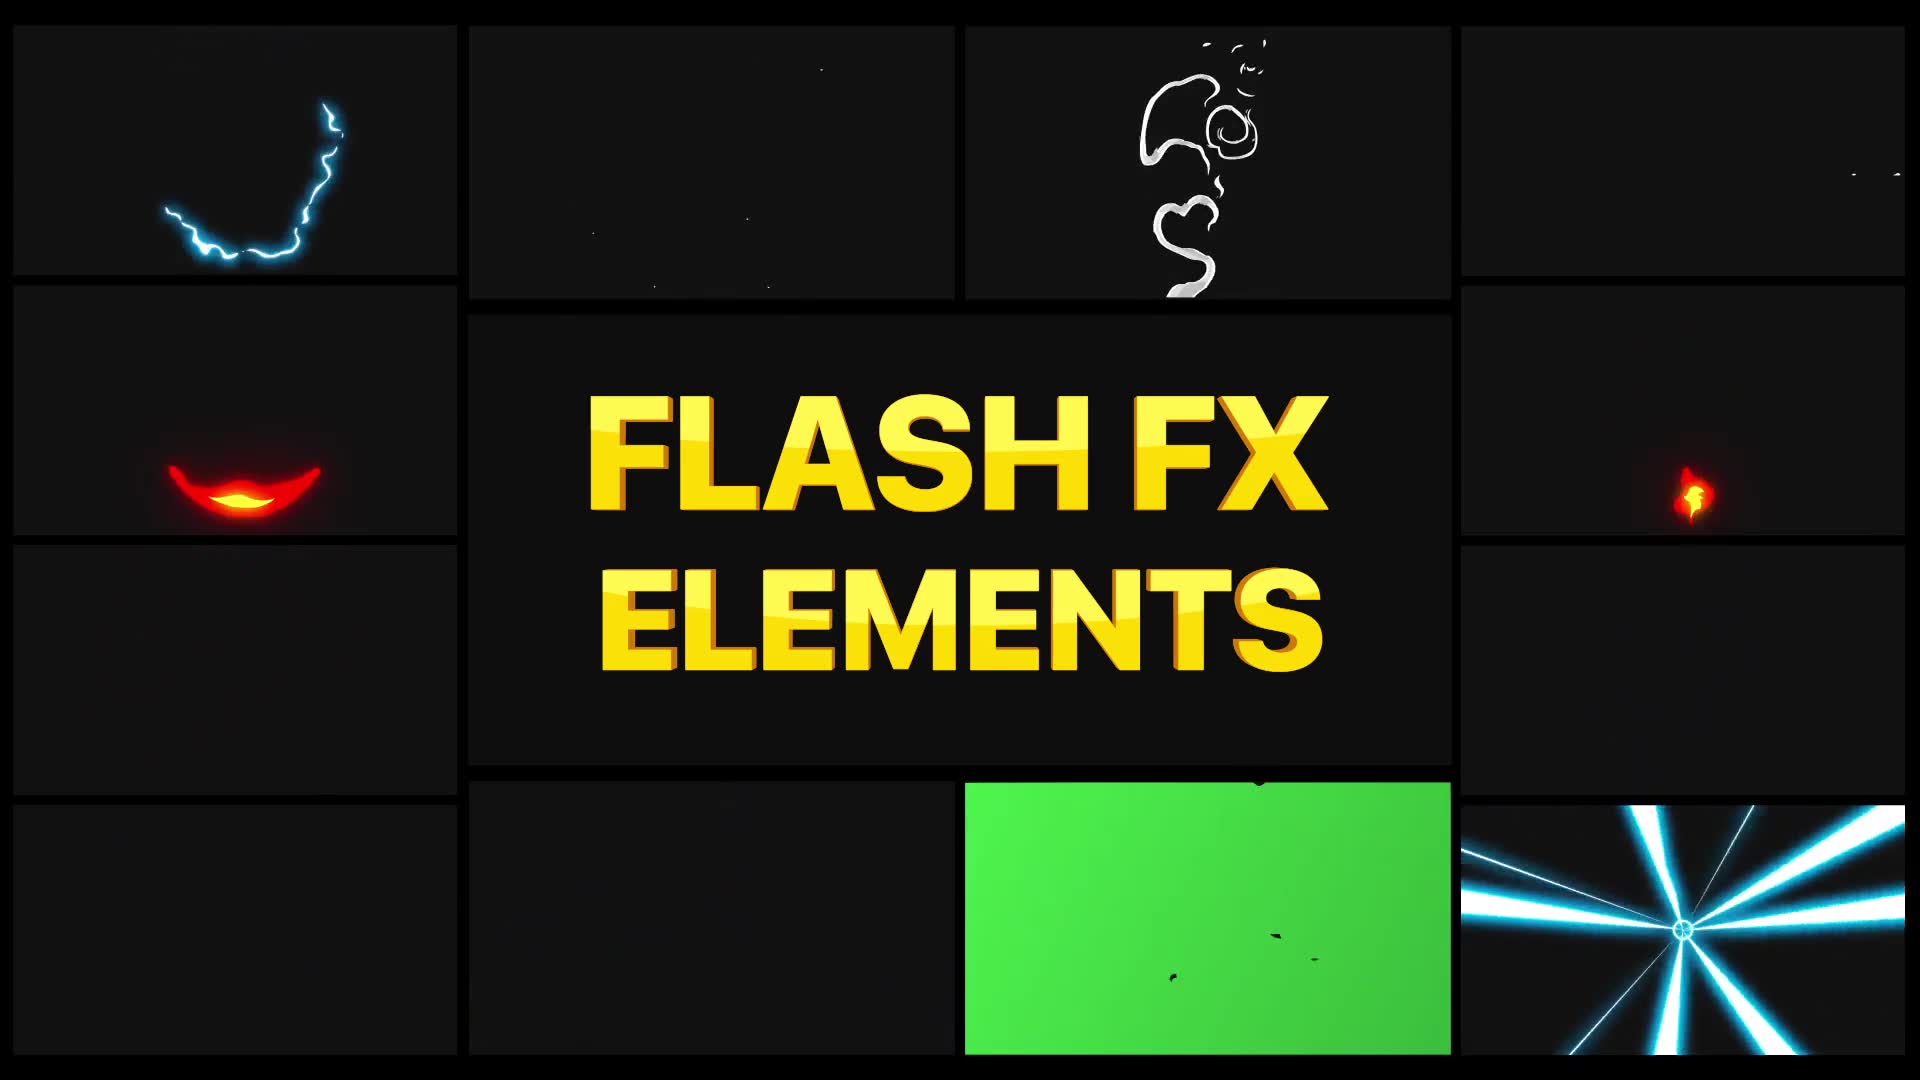 Flash FX Elements Pack 02 | Premiere Pro MOGRT Videohive 29989242 Premiere Pro Image 2